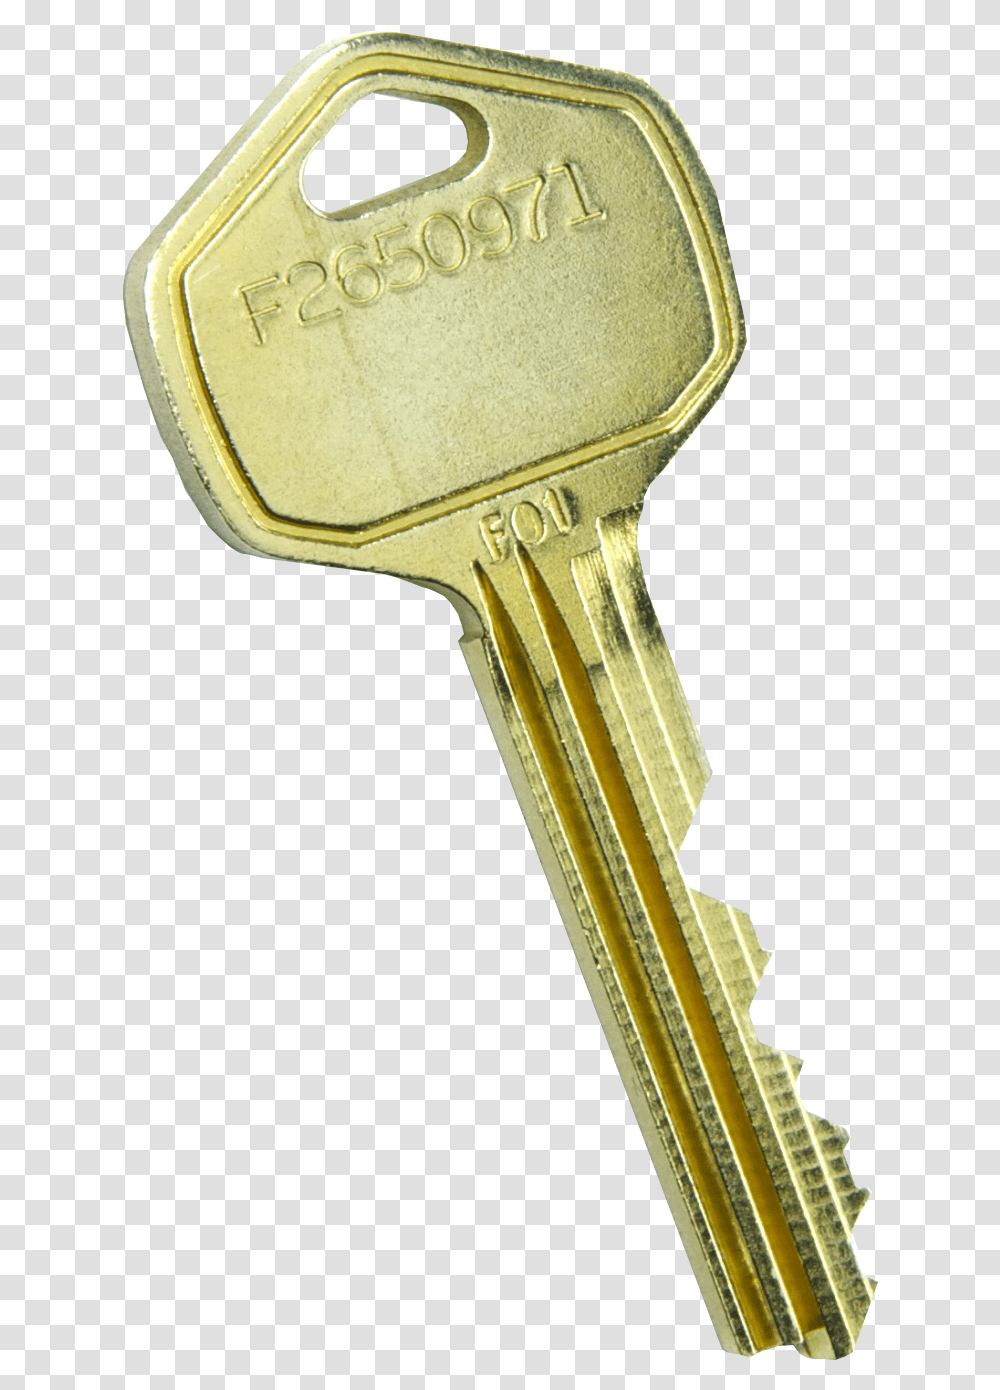 Download Keys Image Key Transparent Png